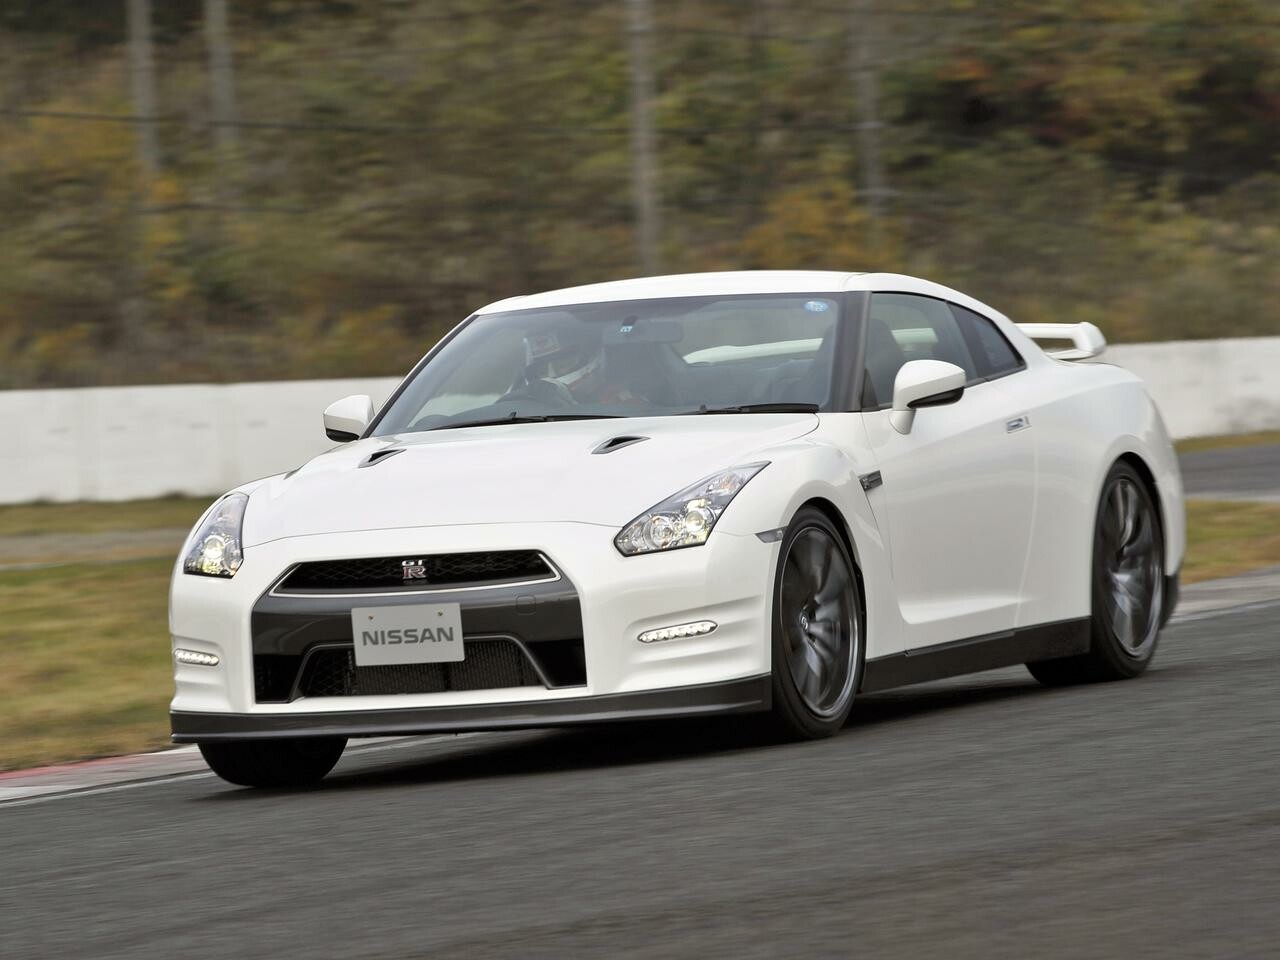 【試乗】日産 GT-Rが2011年モデルで手に入れた「テールを破綻させない」基本性能【10年ひと昔の新車】